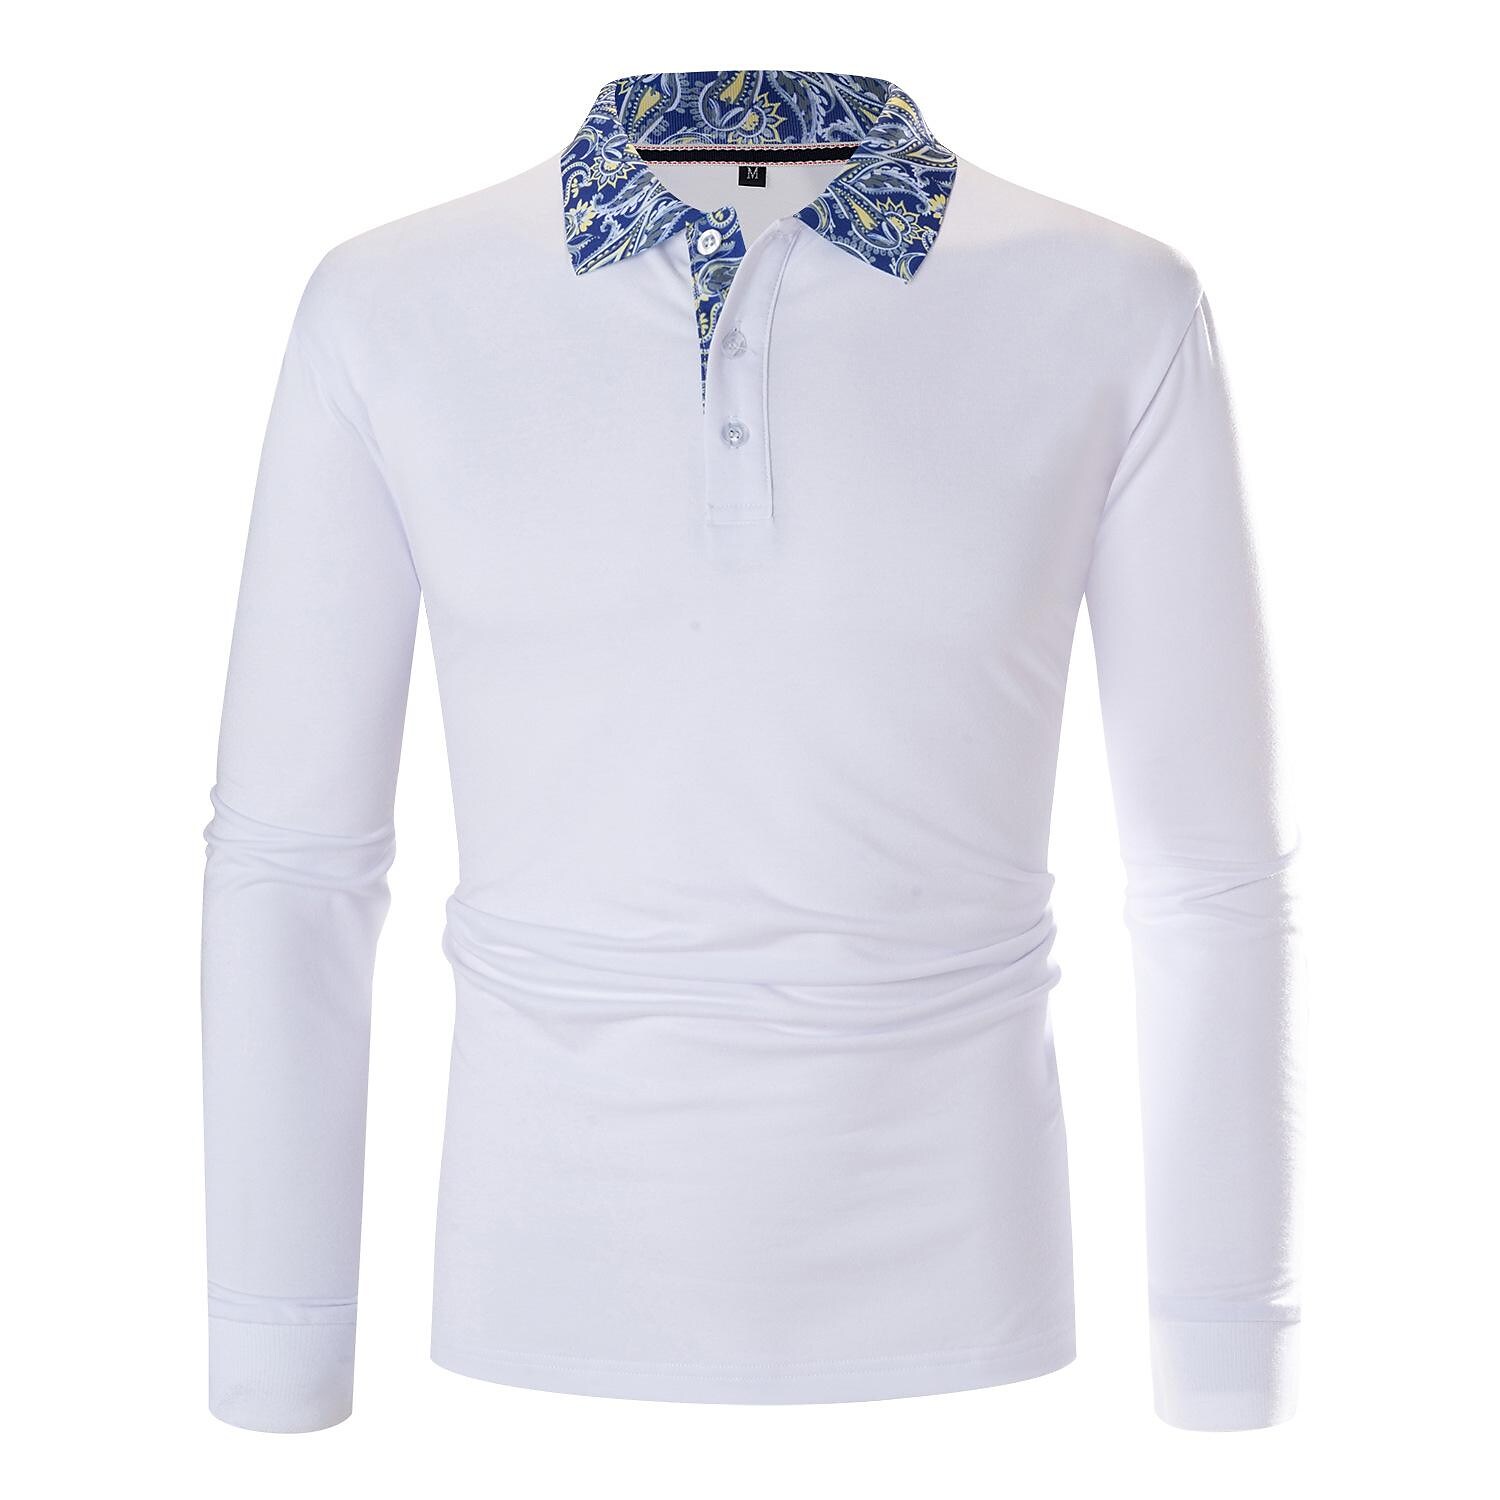 Rogoman Men's Contrast Collar Long Sleeve Polo T-Shirt 